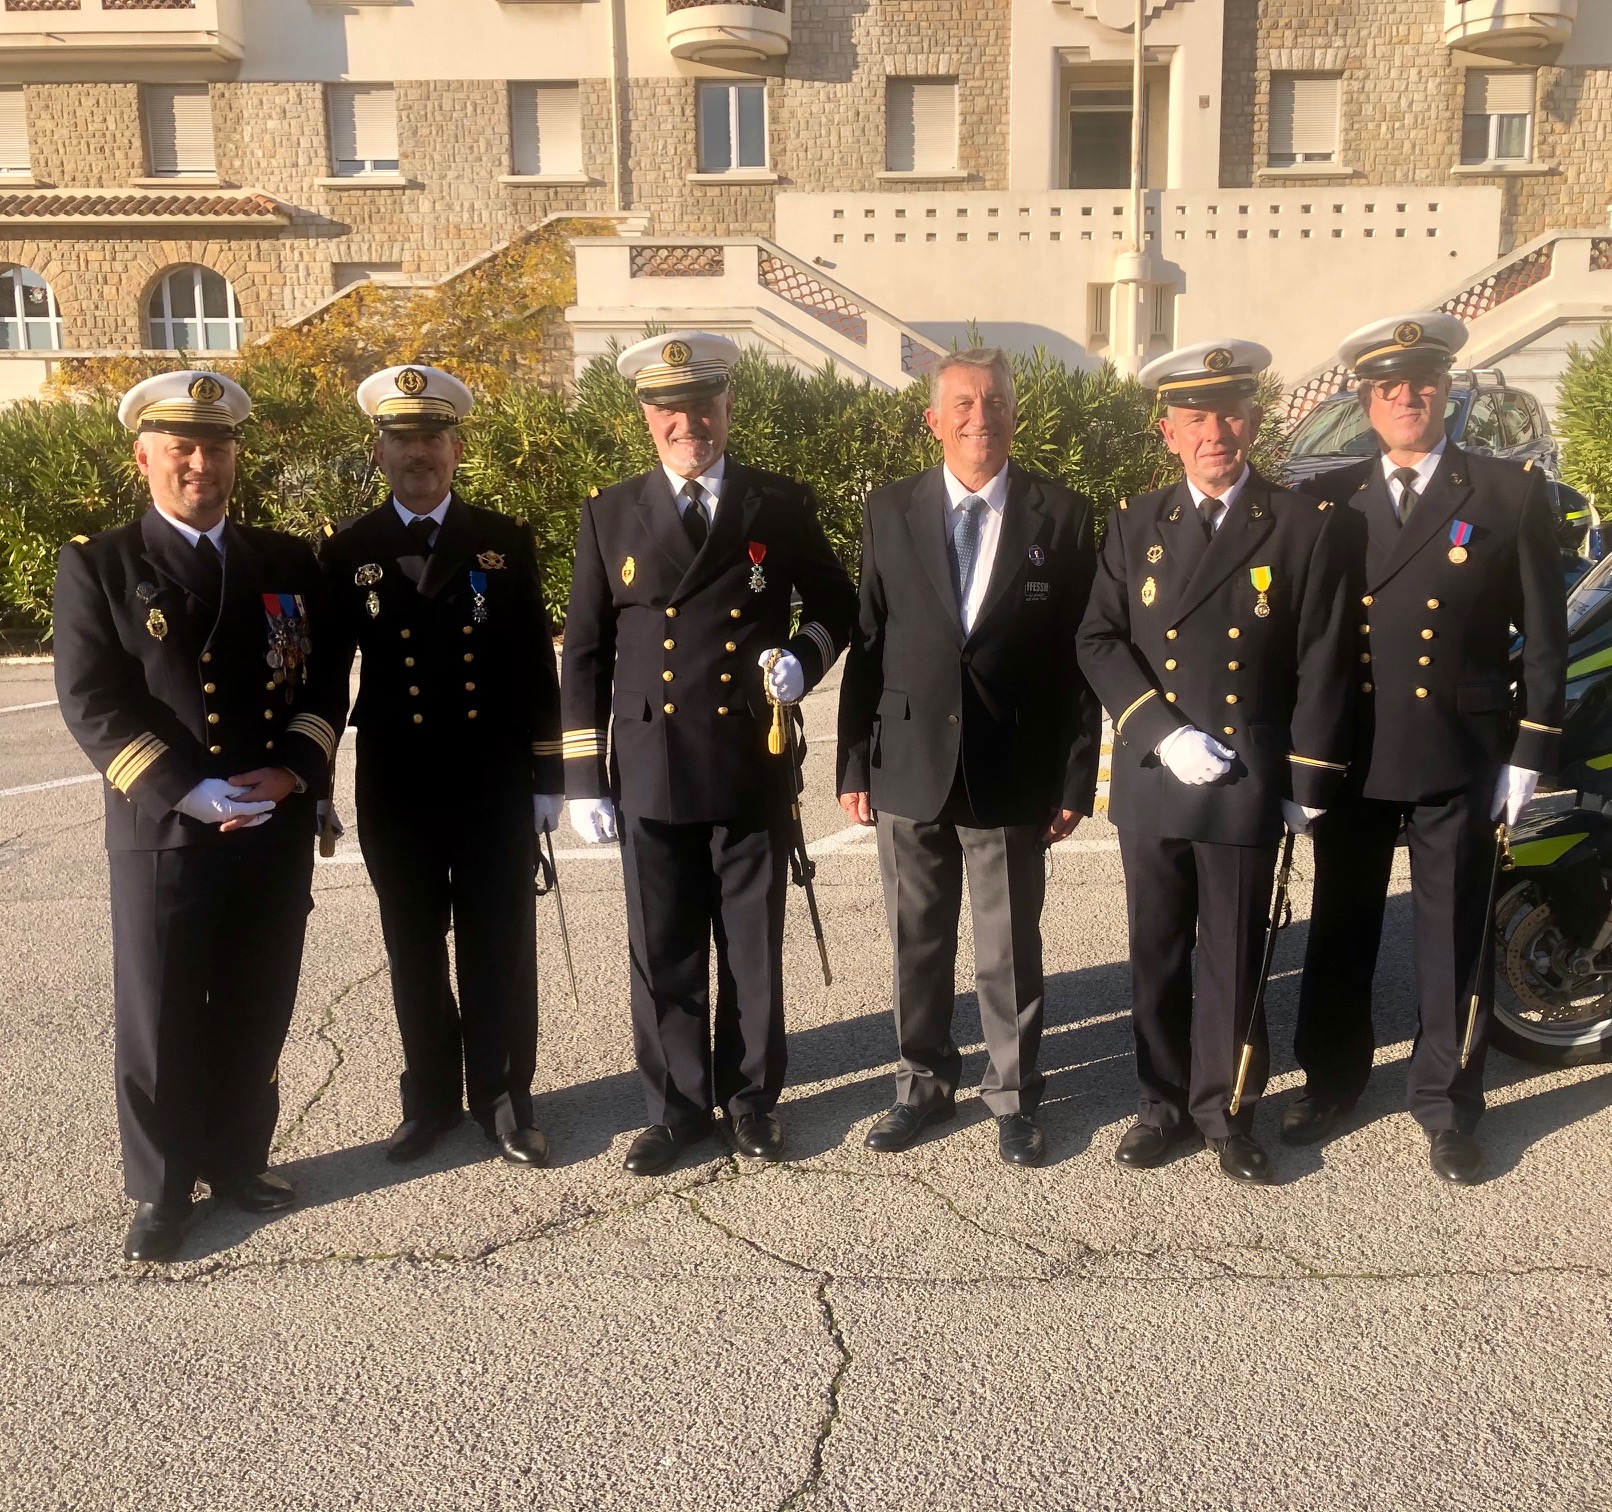 Le vendredi 18 décembre 2020, Jean-Louis Blanchard président de la Ffessm a participé à une grande cérémonie de remise de décorations à la Gendarmerie Maritime de Méditerranée, Toulon.